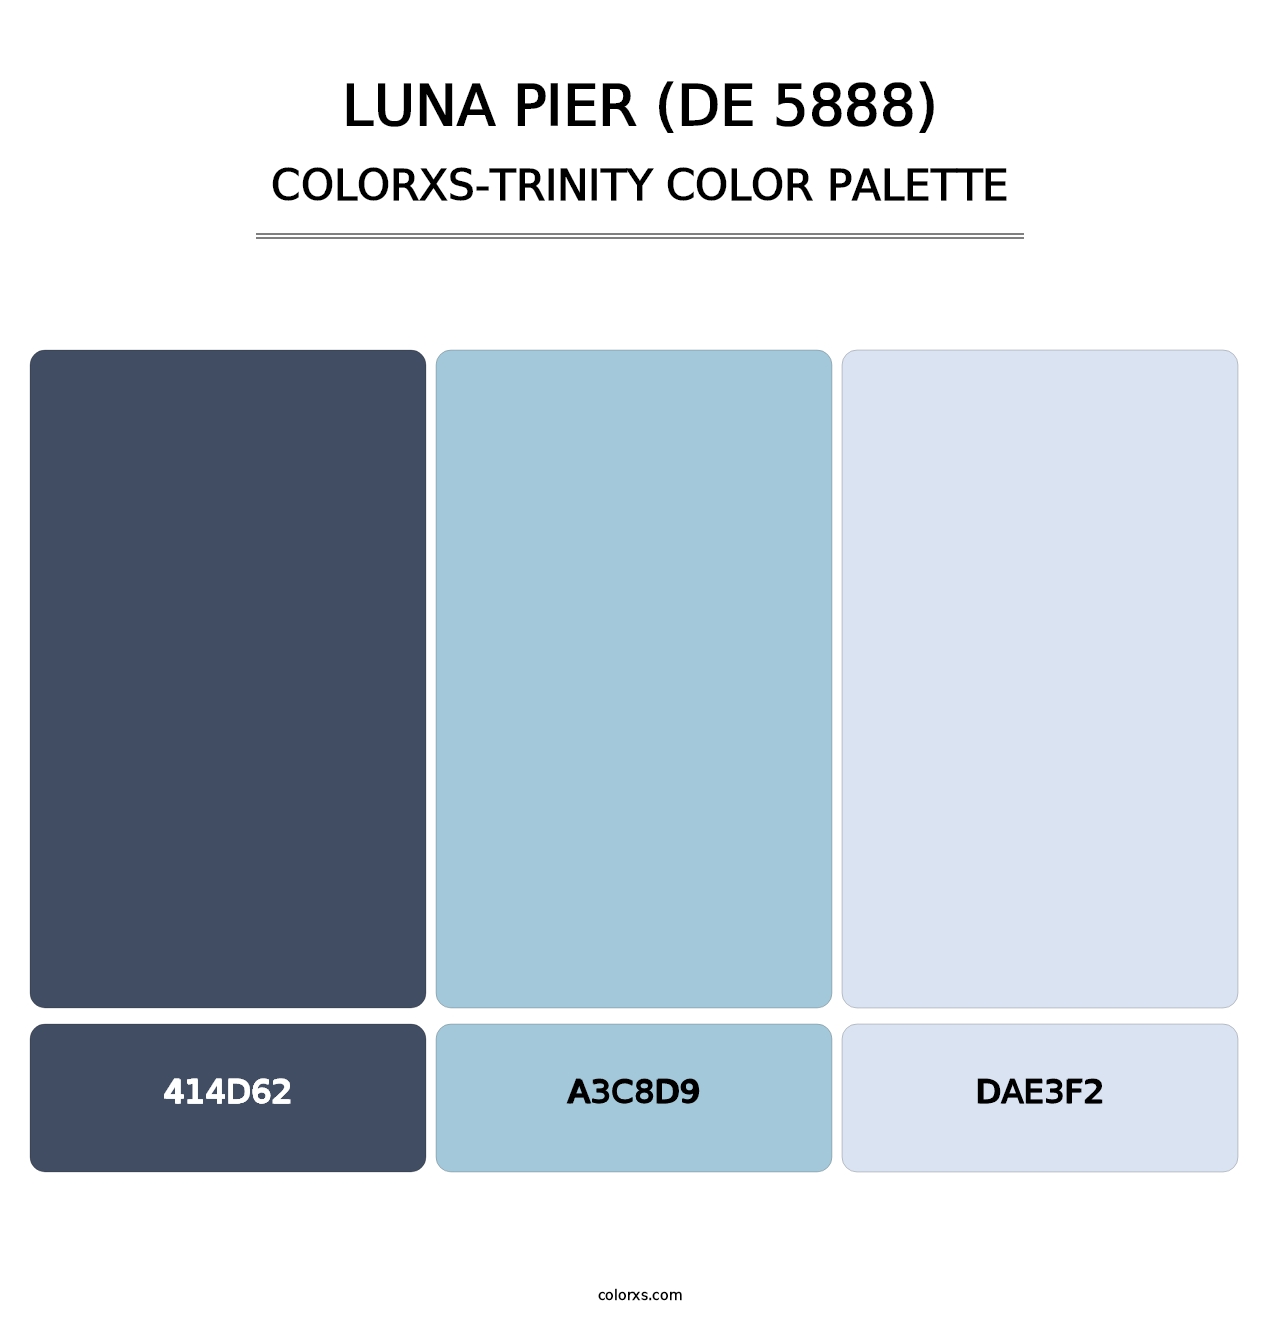 Luna Pier (DE 5888) - Colorxs Trinity Palette